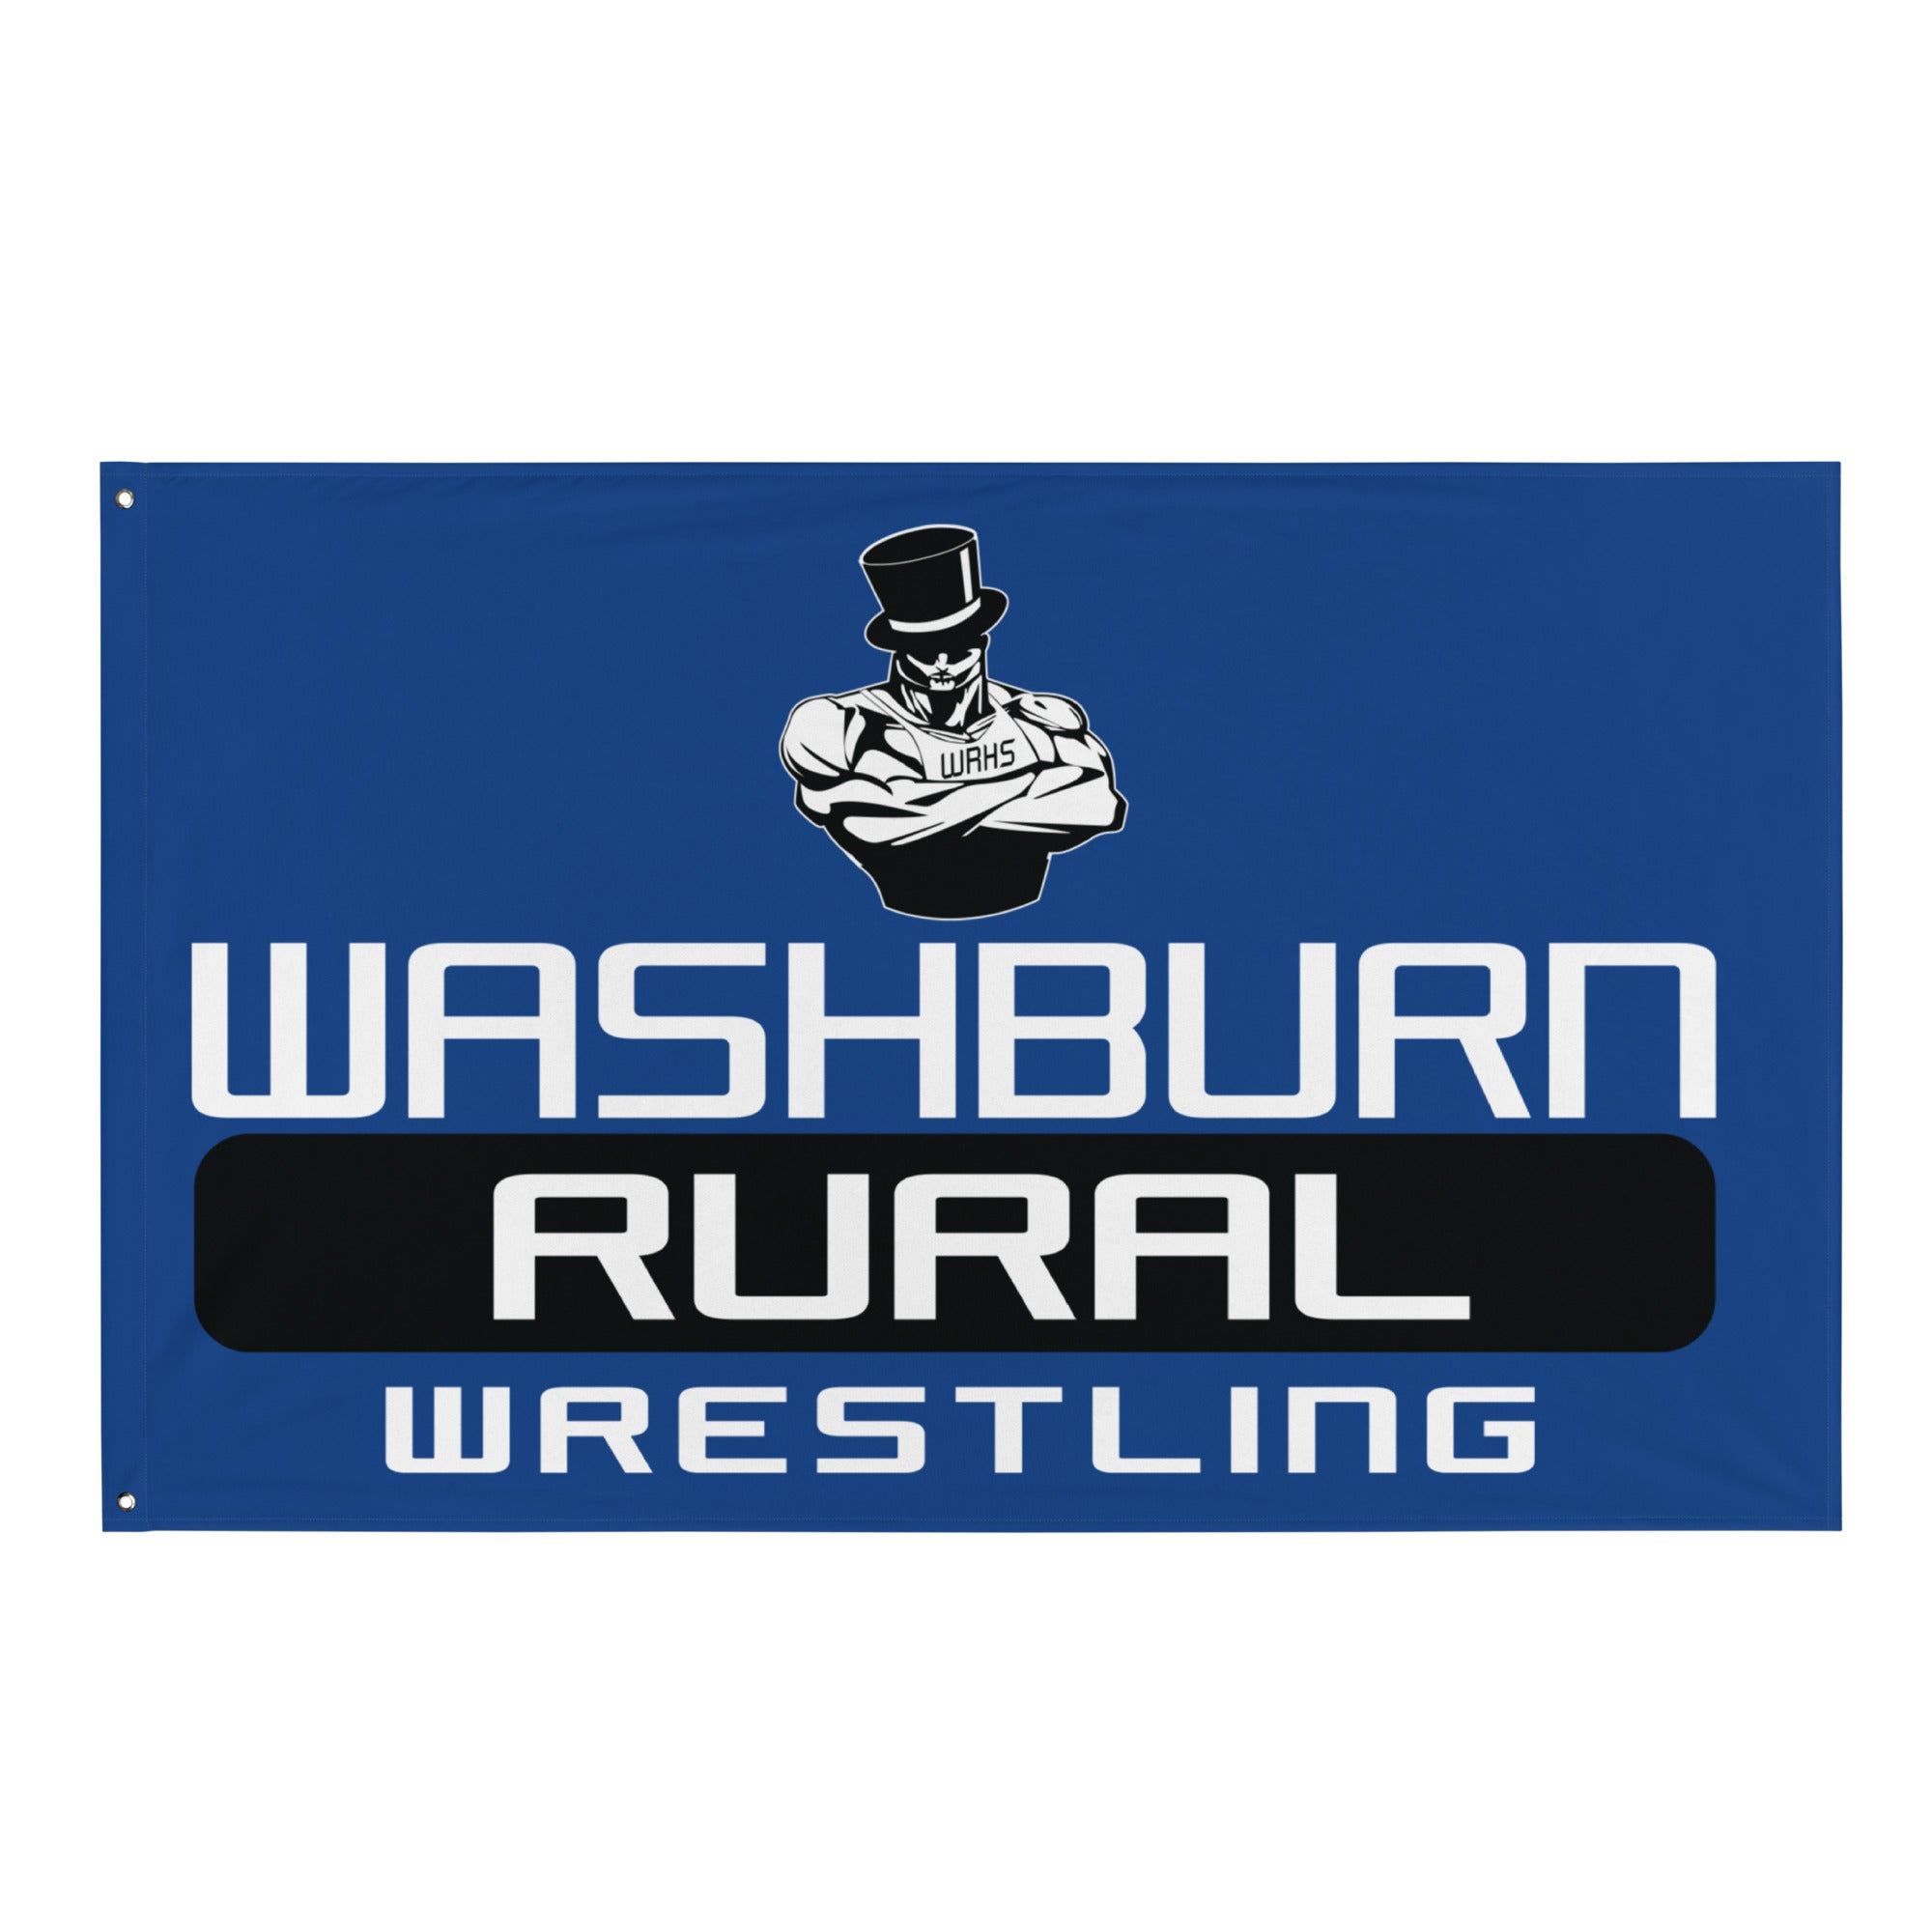 Washburn Rural Wrestling Flag